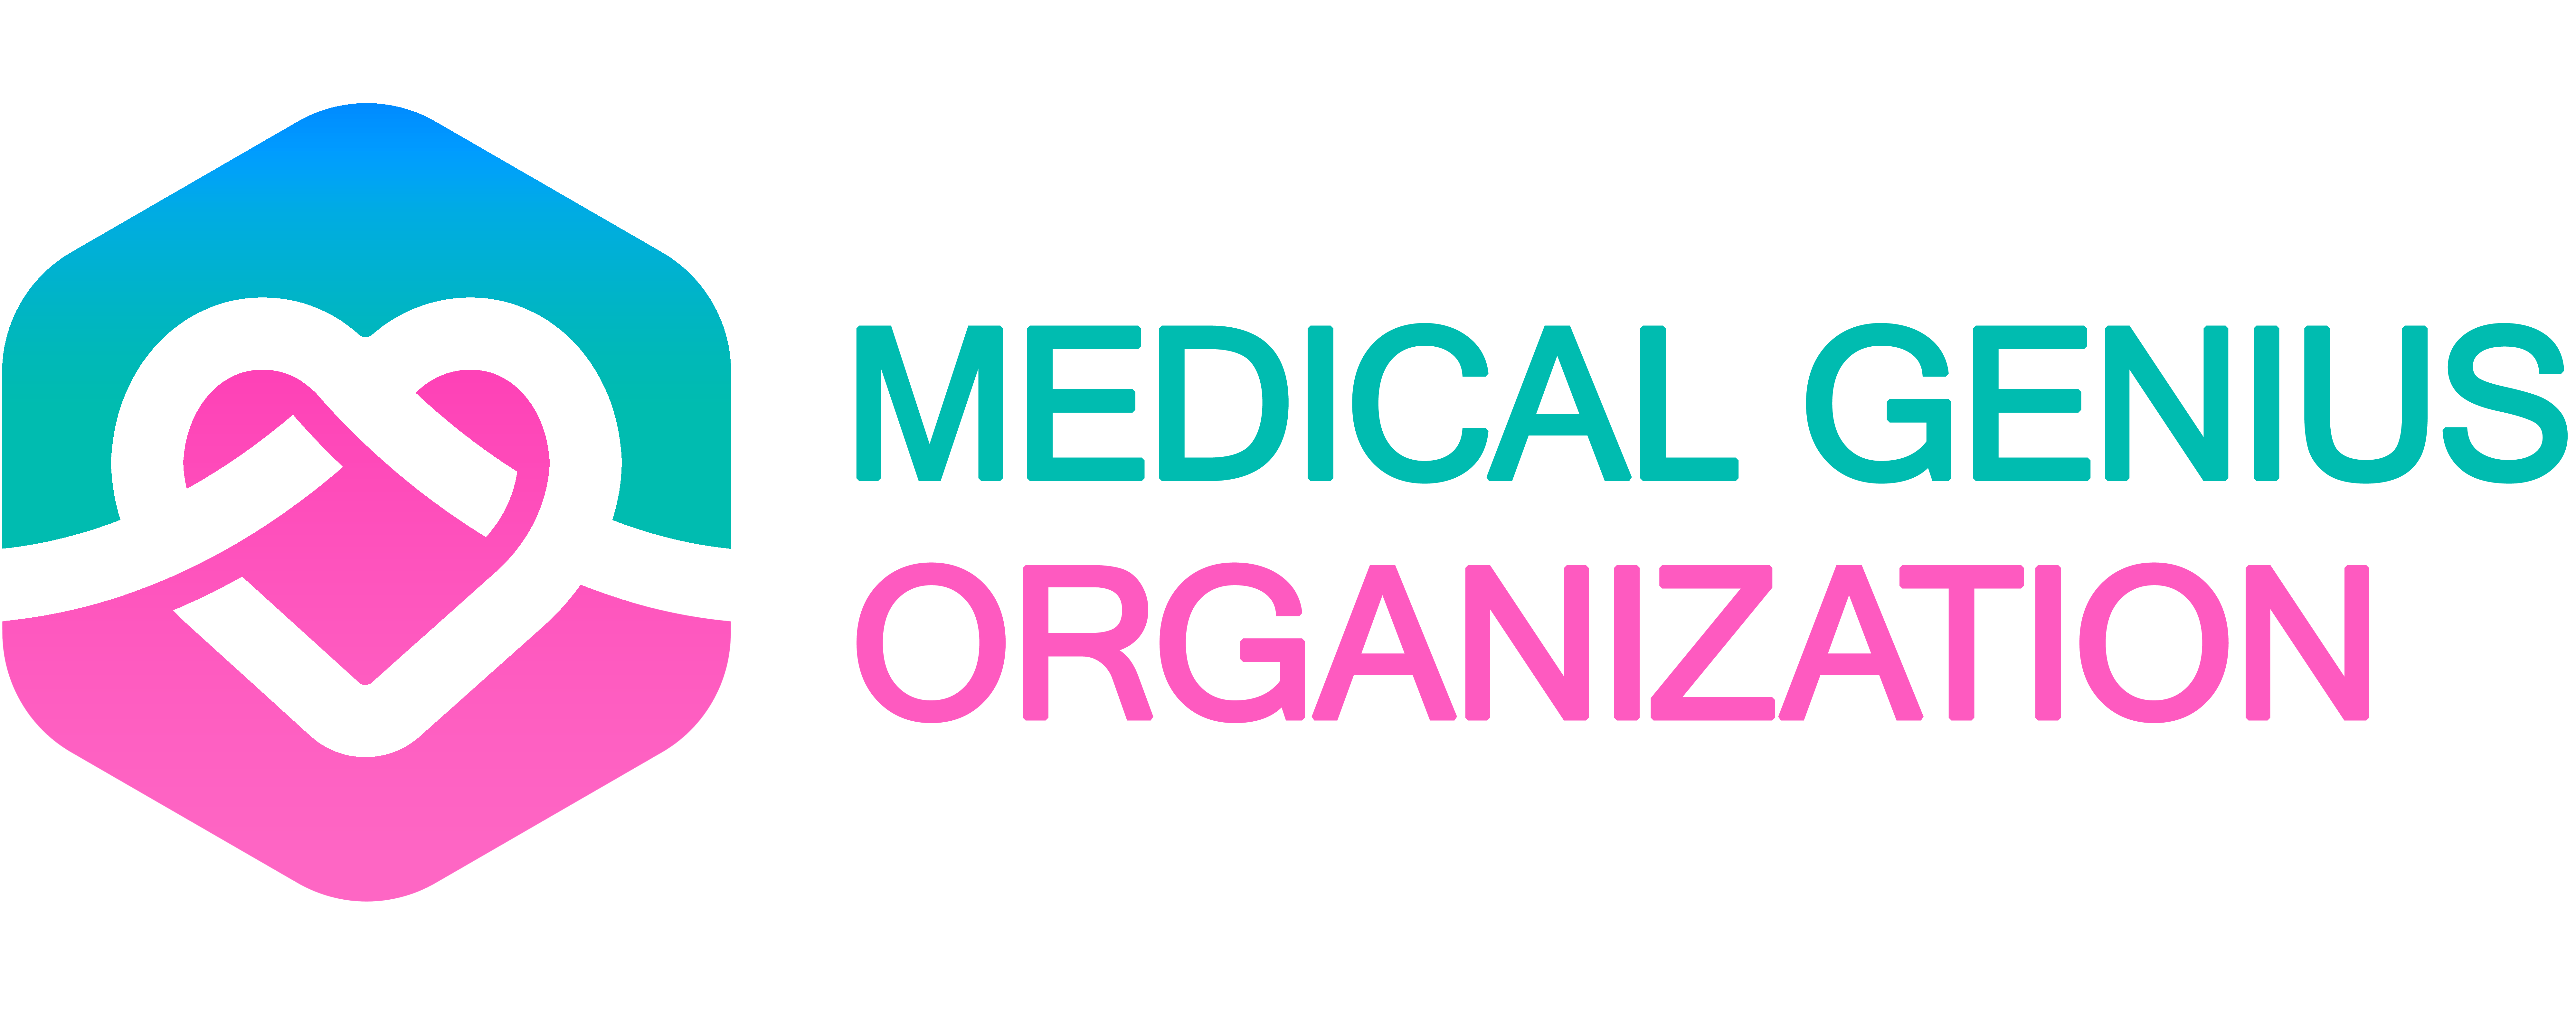 Medical Genius Organization